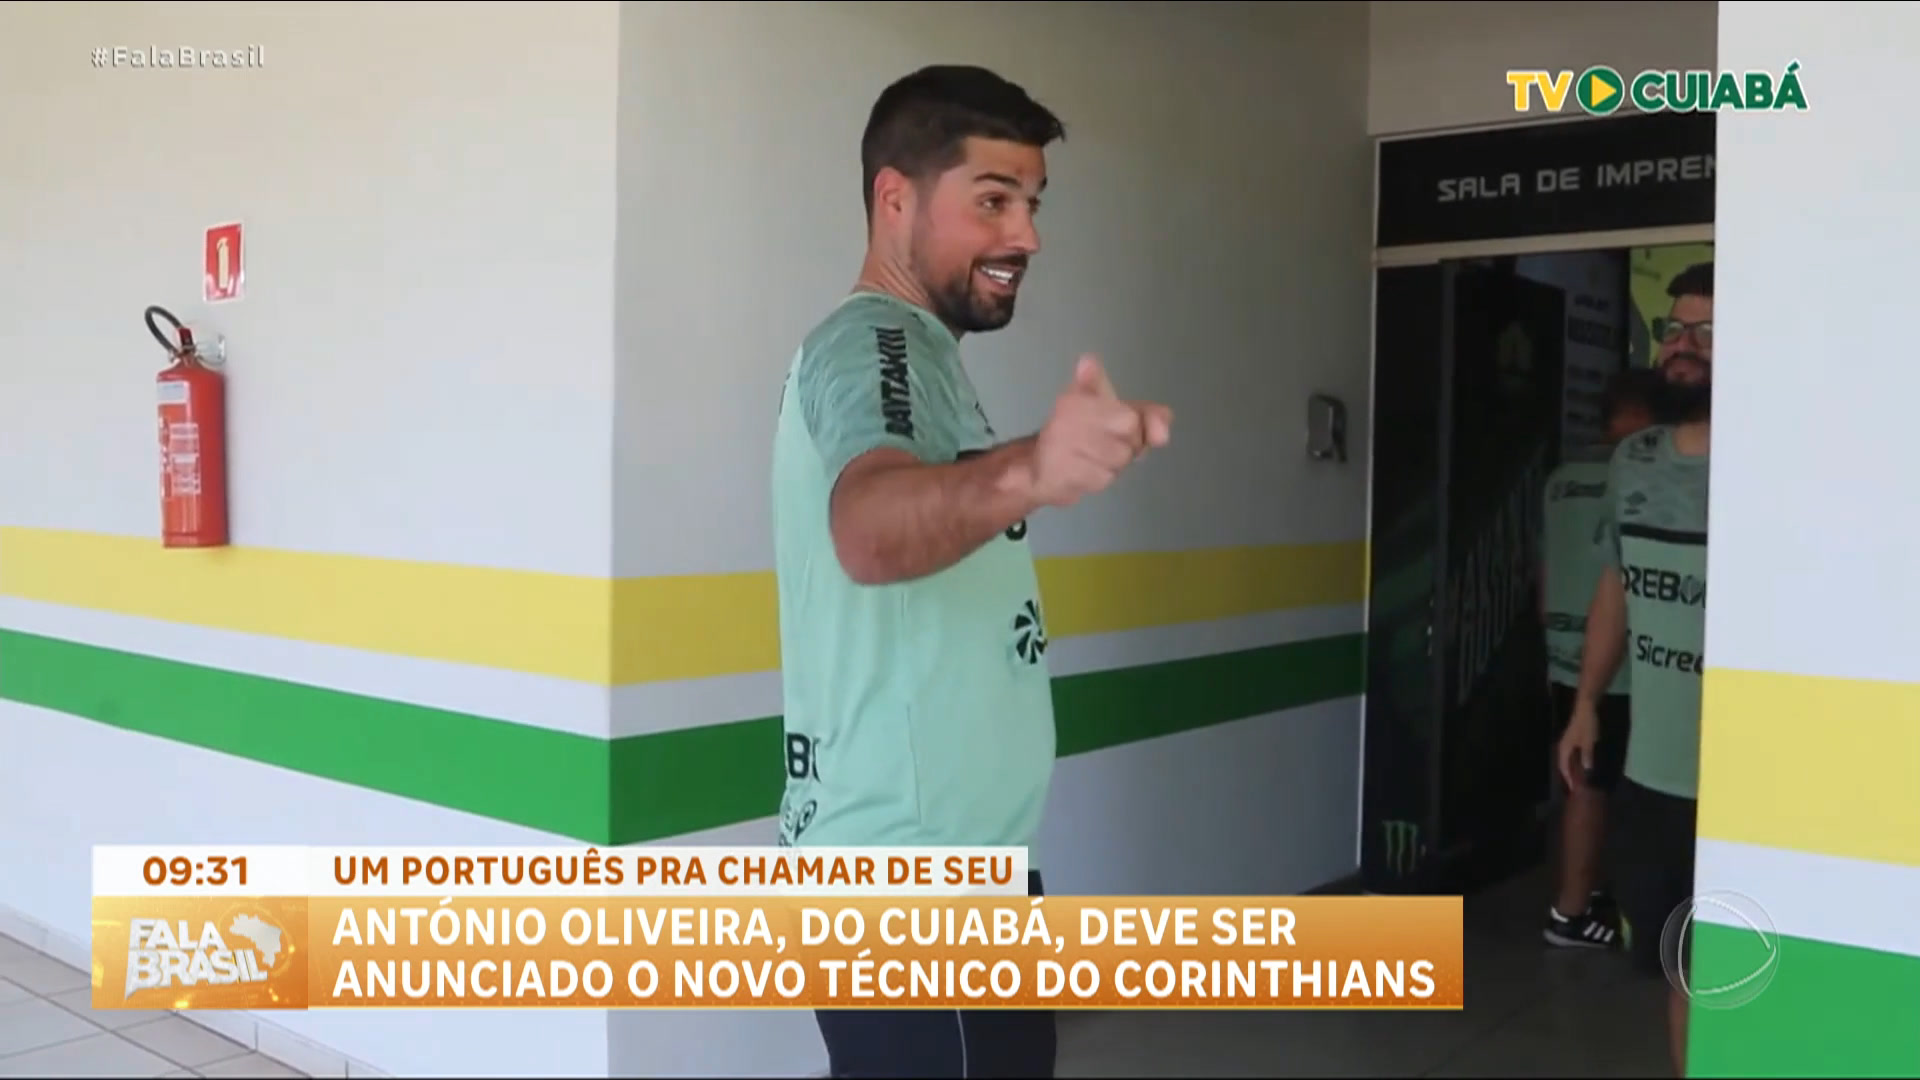 Vídeo: Fala Esporte: António Oliveira deve ser o novo técnico do Corinthians